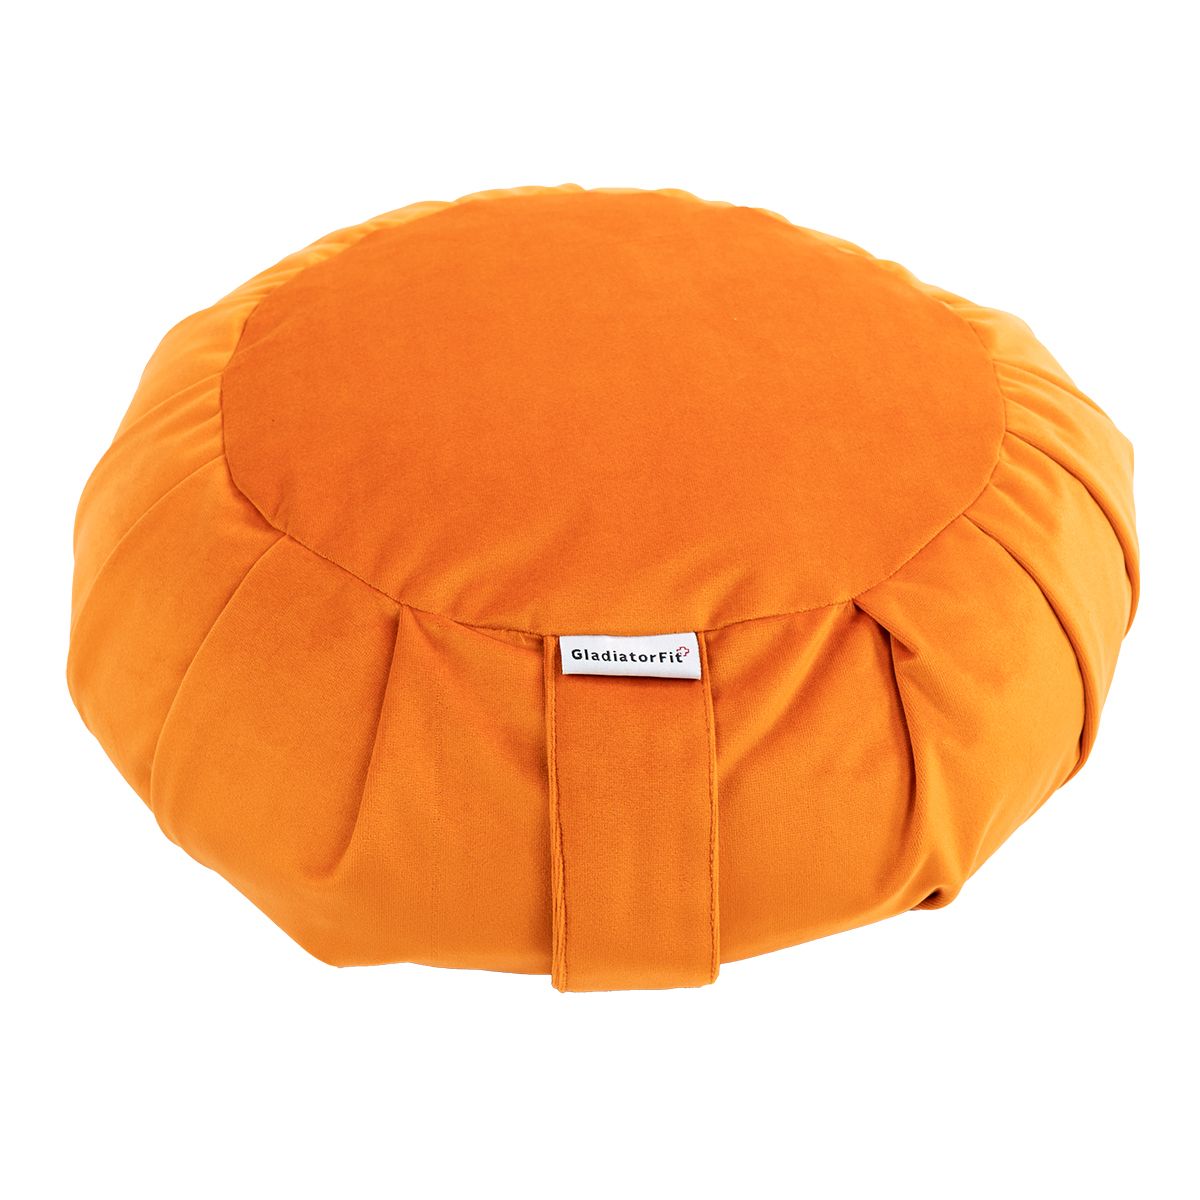 GladiatorFit Zafu Zen Meditationskissen aus Baumwolle Ø 35cm | Orange